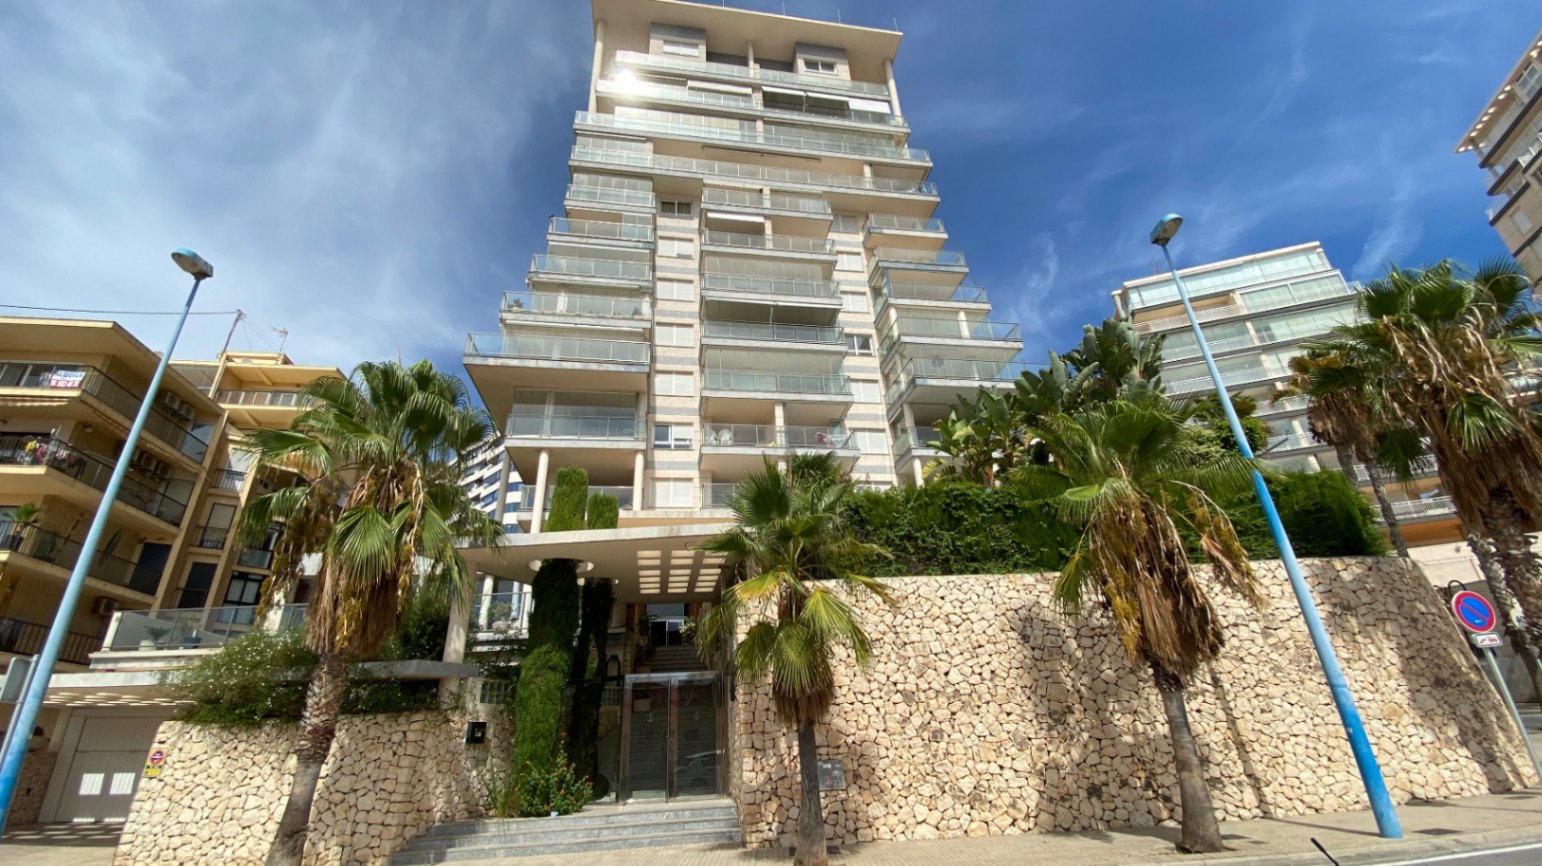 Zum Verkauf steht eine spektakuläre, geräumige Wohnung mit Panoramablick auf das Meer, den Hafen von Calpe und Peñon de Ifach